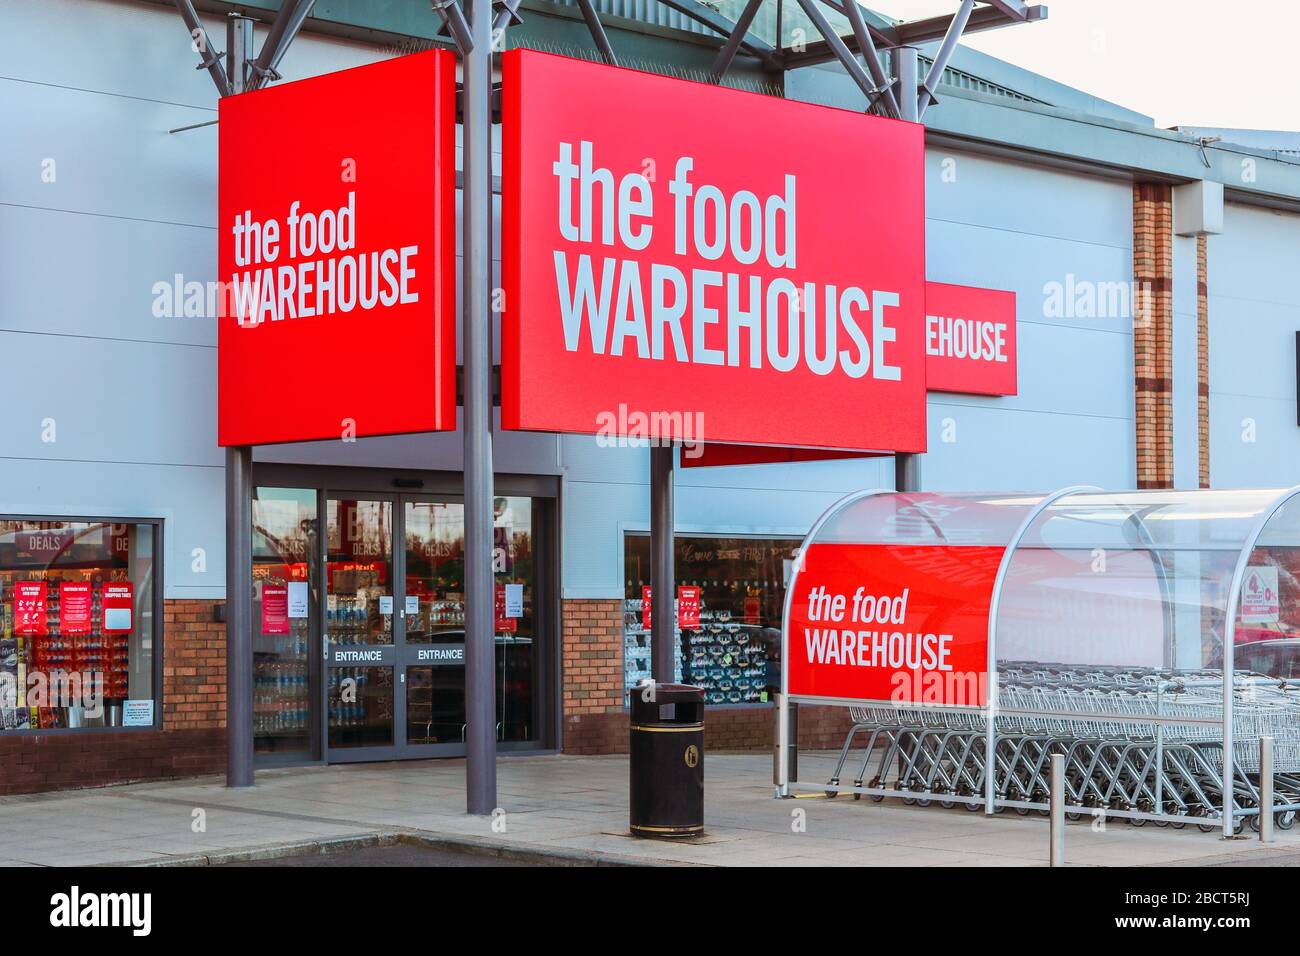 Ingresso al supermercato, il magazzino alimentare che mostra l'ingresso e il logo aziendale sulla segnaletica e il parcheggio dei tram, Irvine Foto Stock